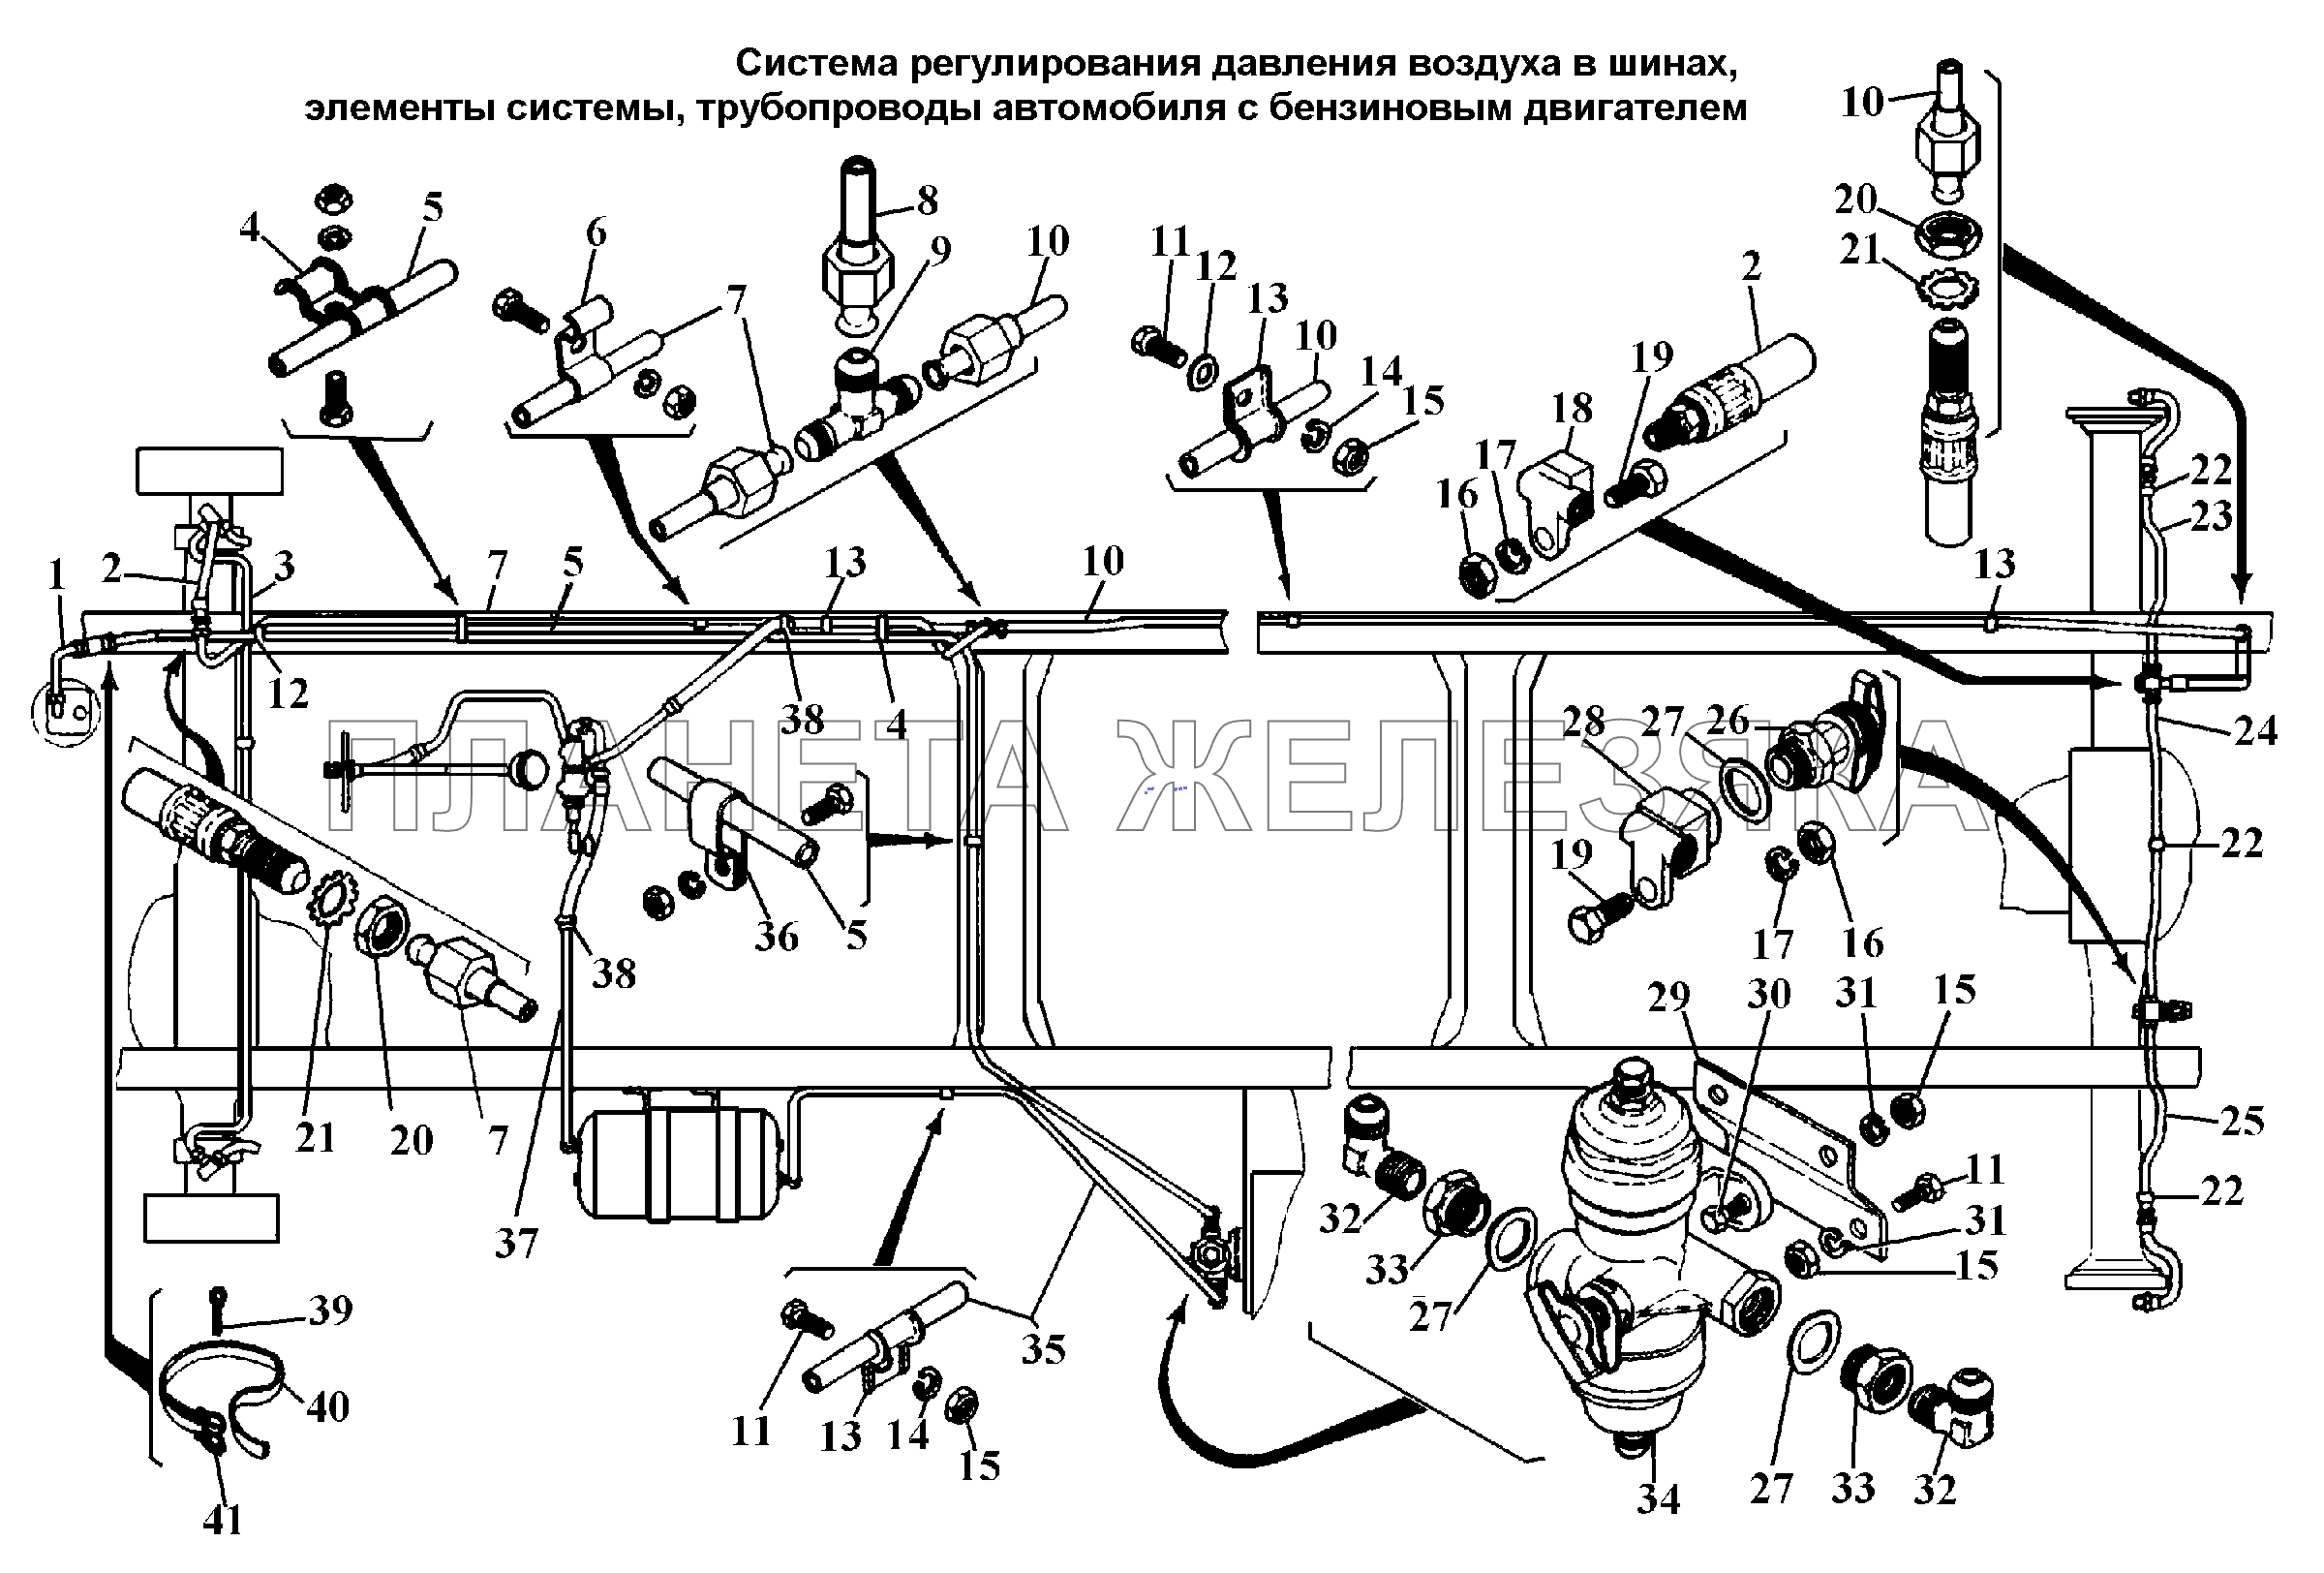 Система регулирования давления воздуха в шинах автомобиля с бензиновым двигателем ГАЗ-3308